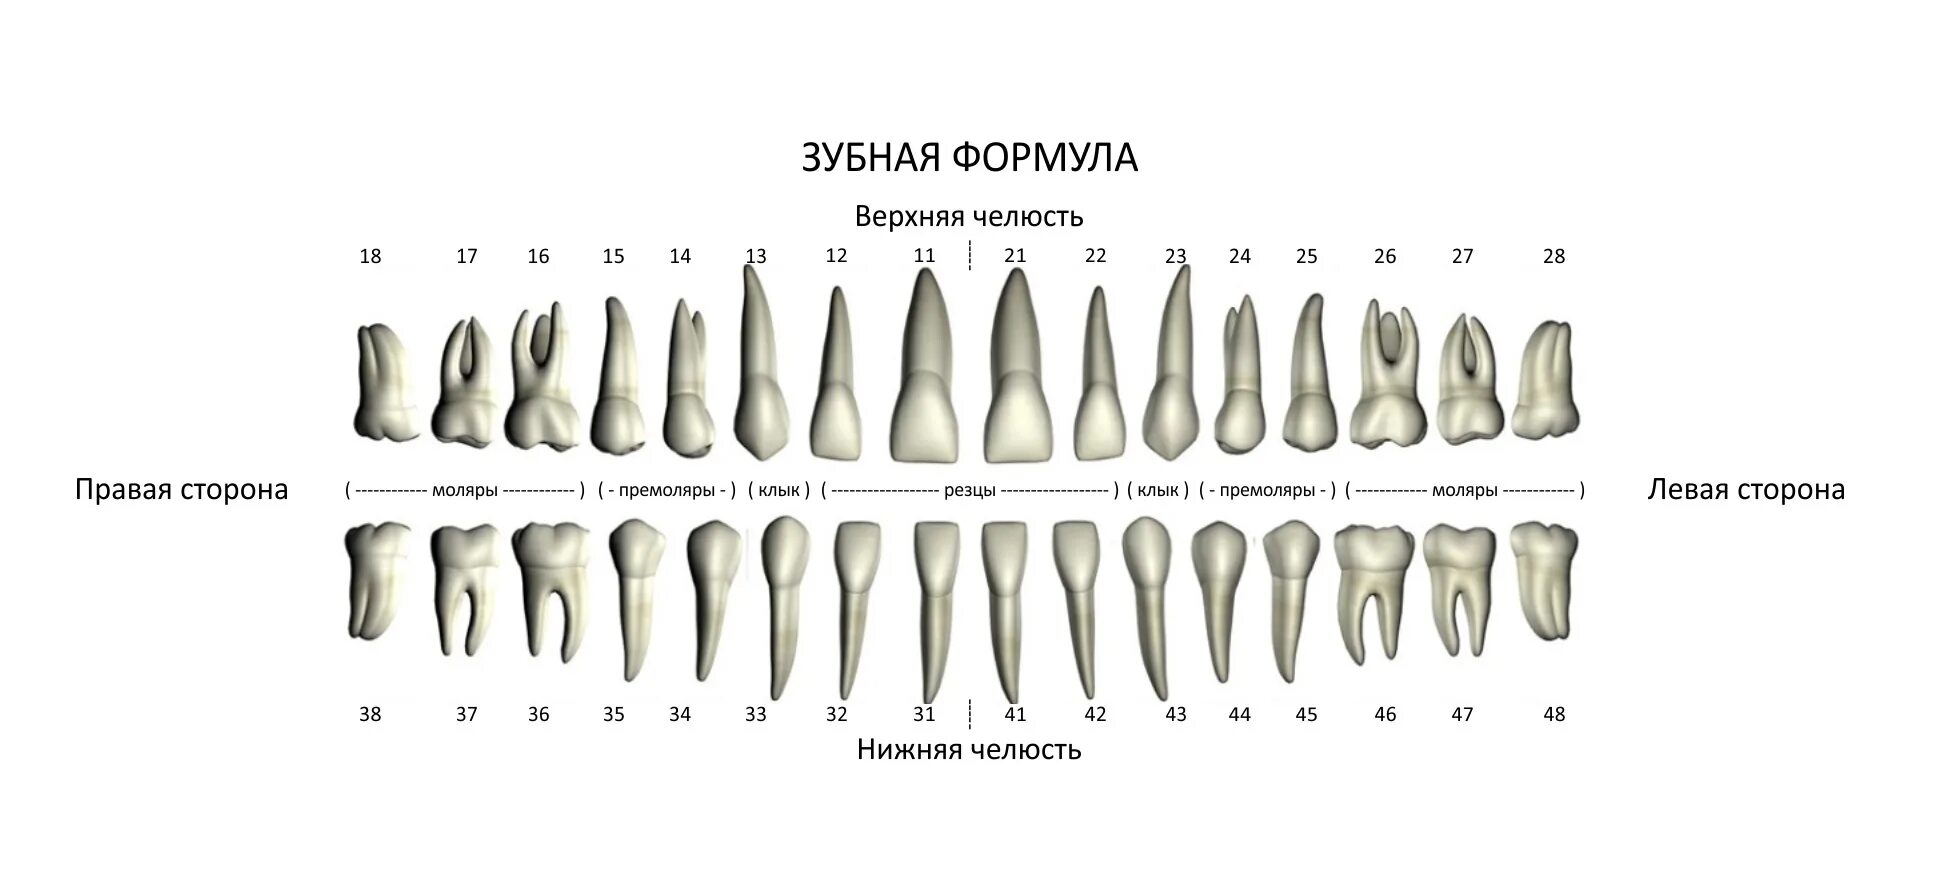 3 5 8 зуб. Анатомическая зубная формула постоянных зубов. Формула зубов резцы моляры премоляры. Зубная формула по воз молочных зубов. Зубная формула зуба 1.1 обозначает:.